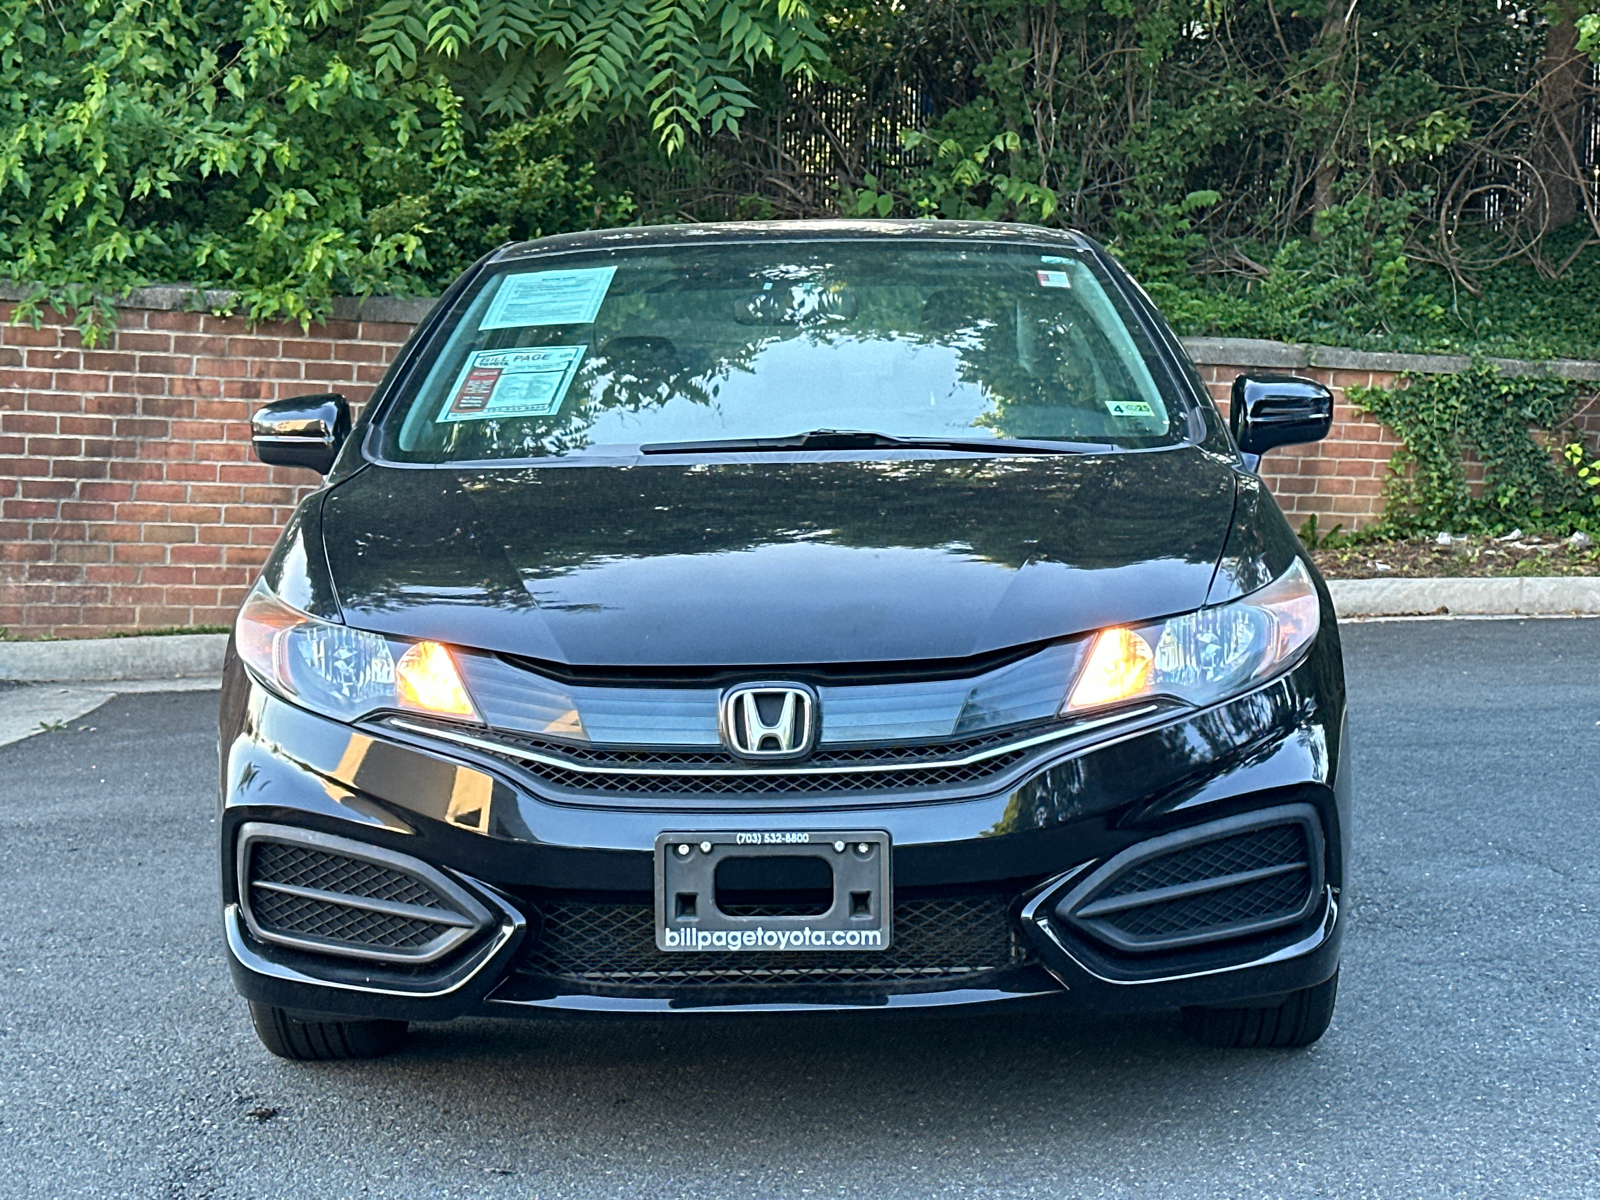 2014 Honda Civic LX 2